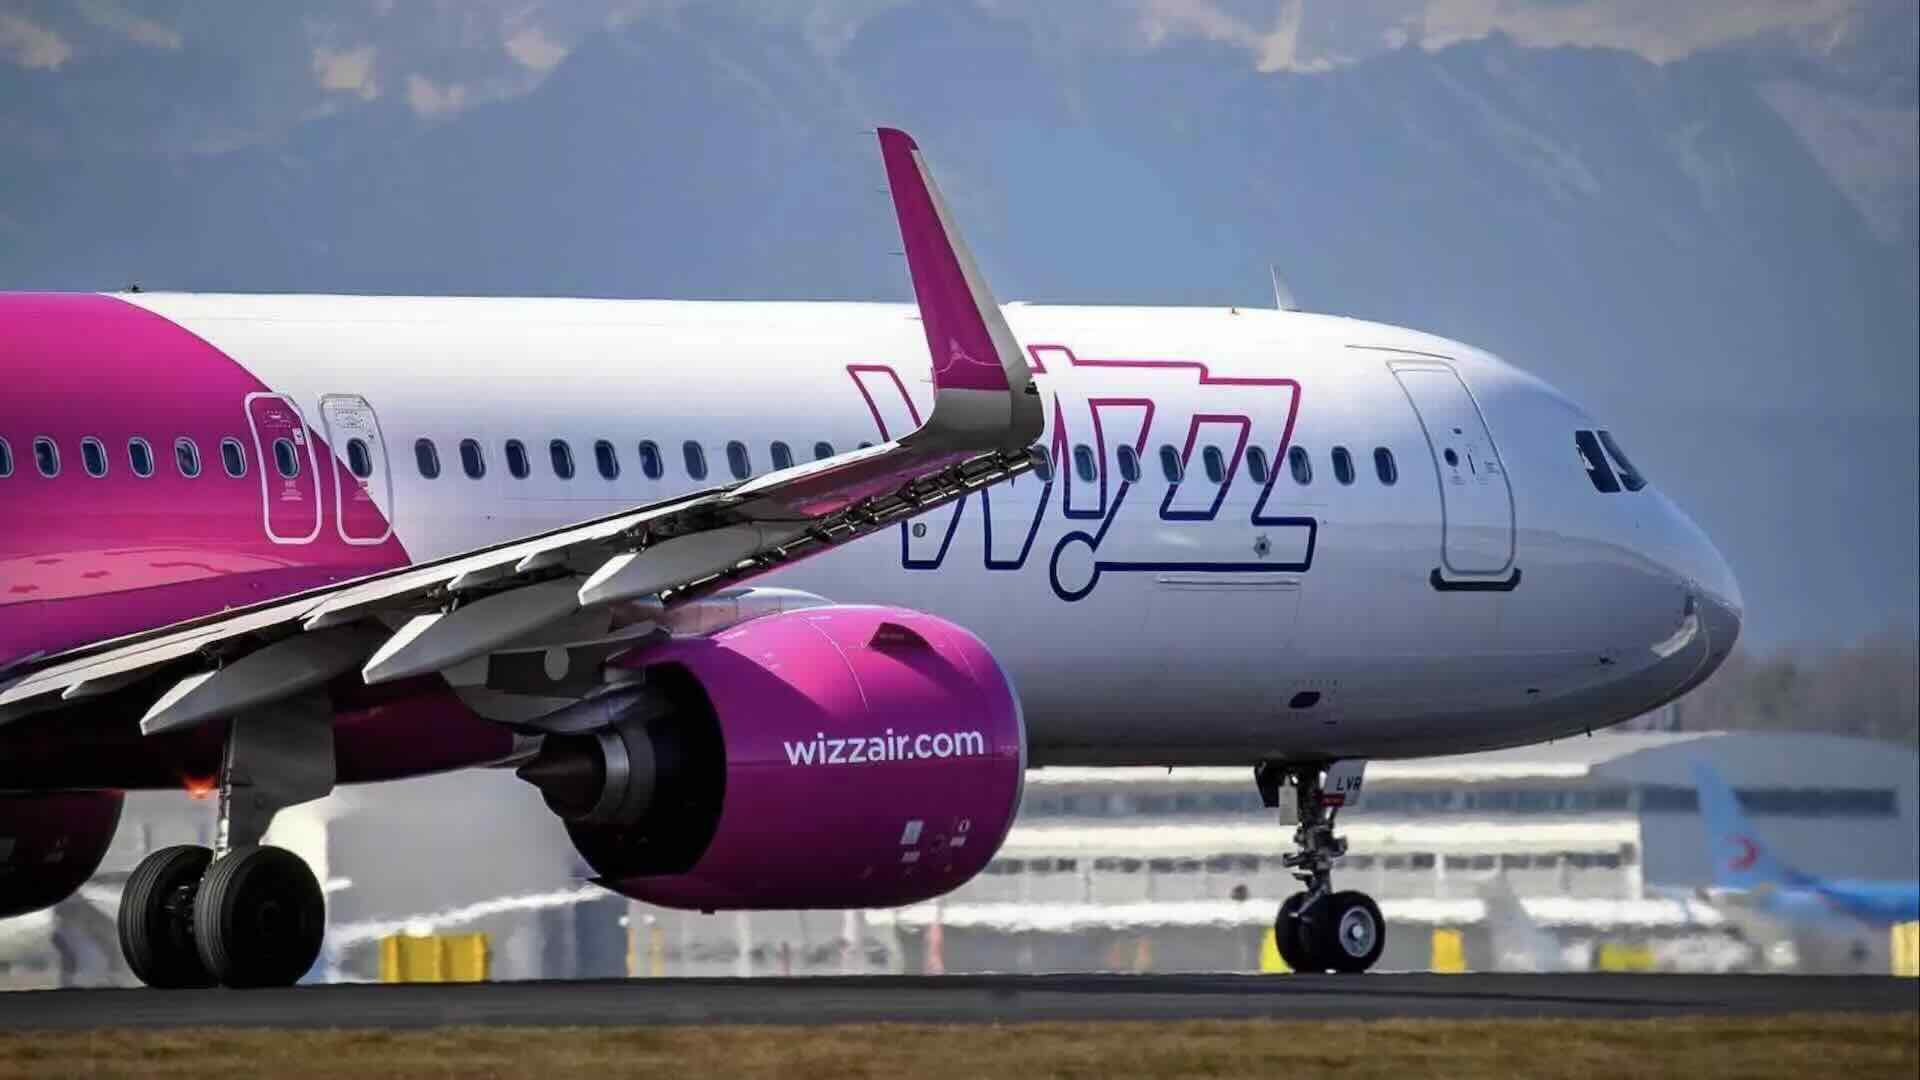 Offerte voli Wizz Air: sconto 15% per la Festa della Donna